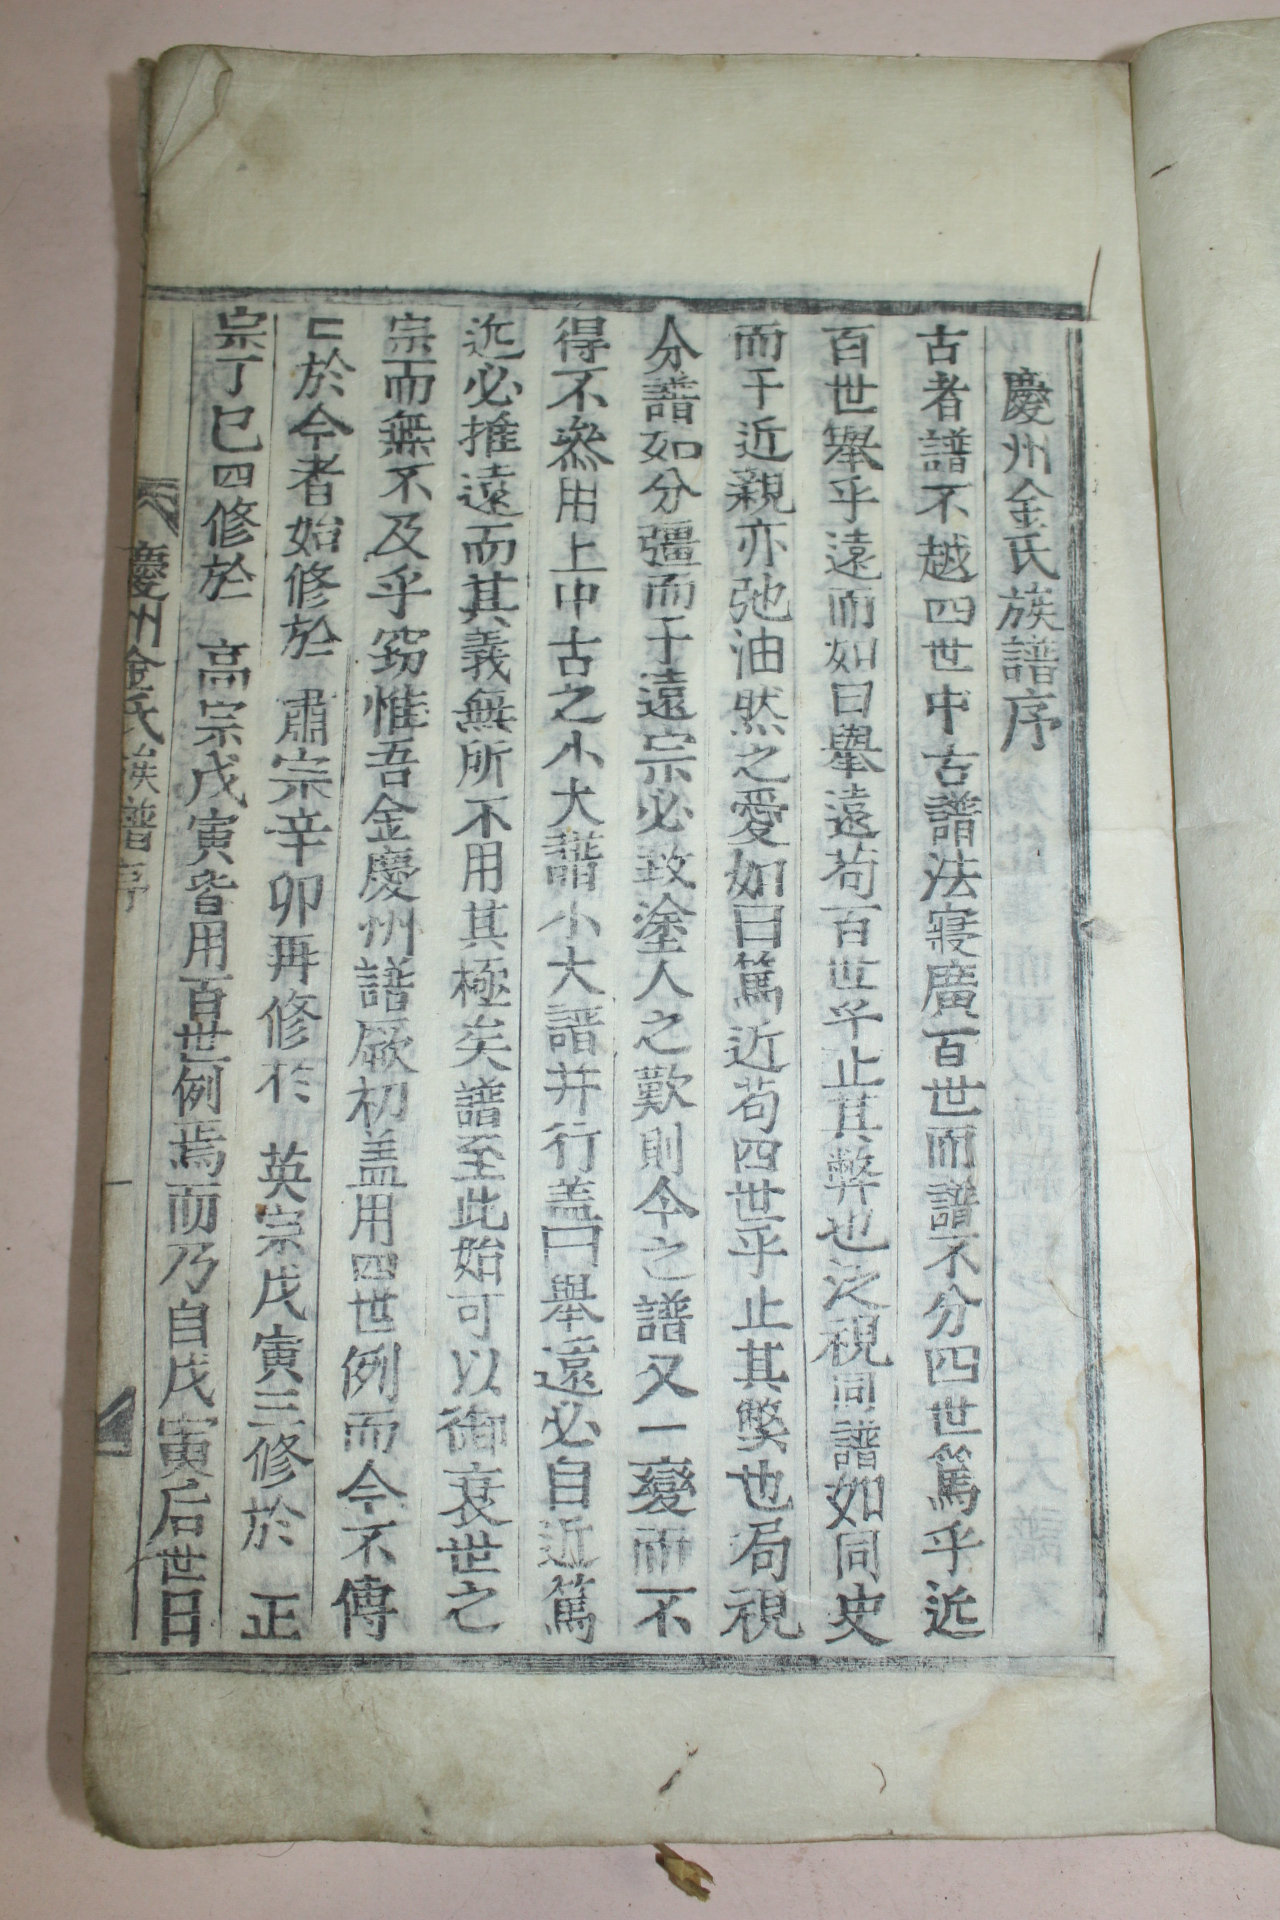 목활자본 경주김씨족보(慶州金氏族譜)권1  1책